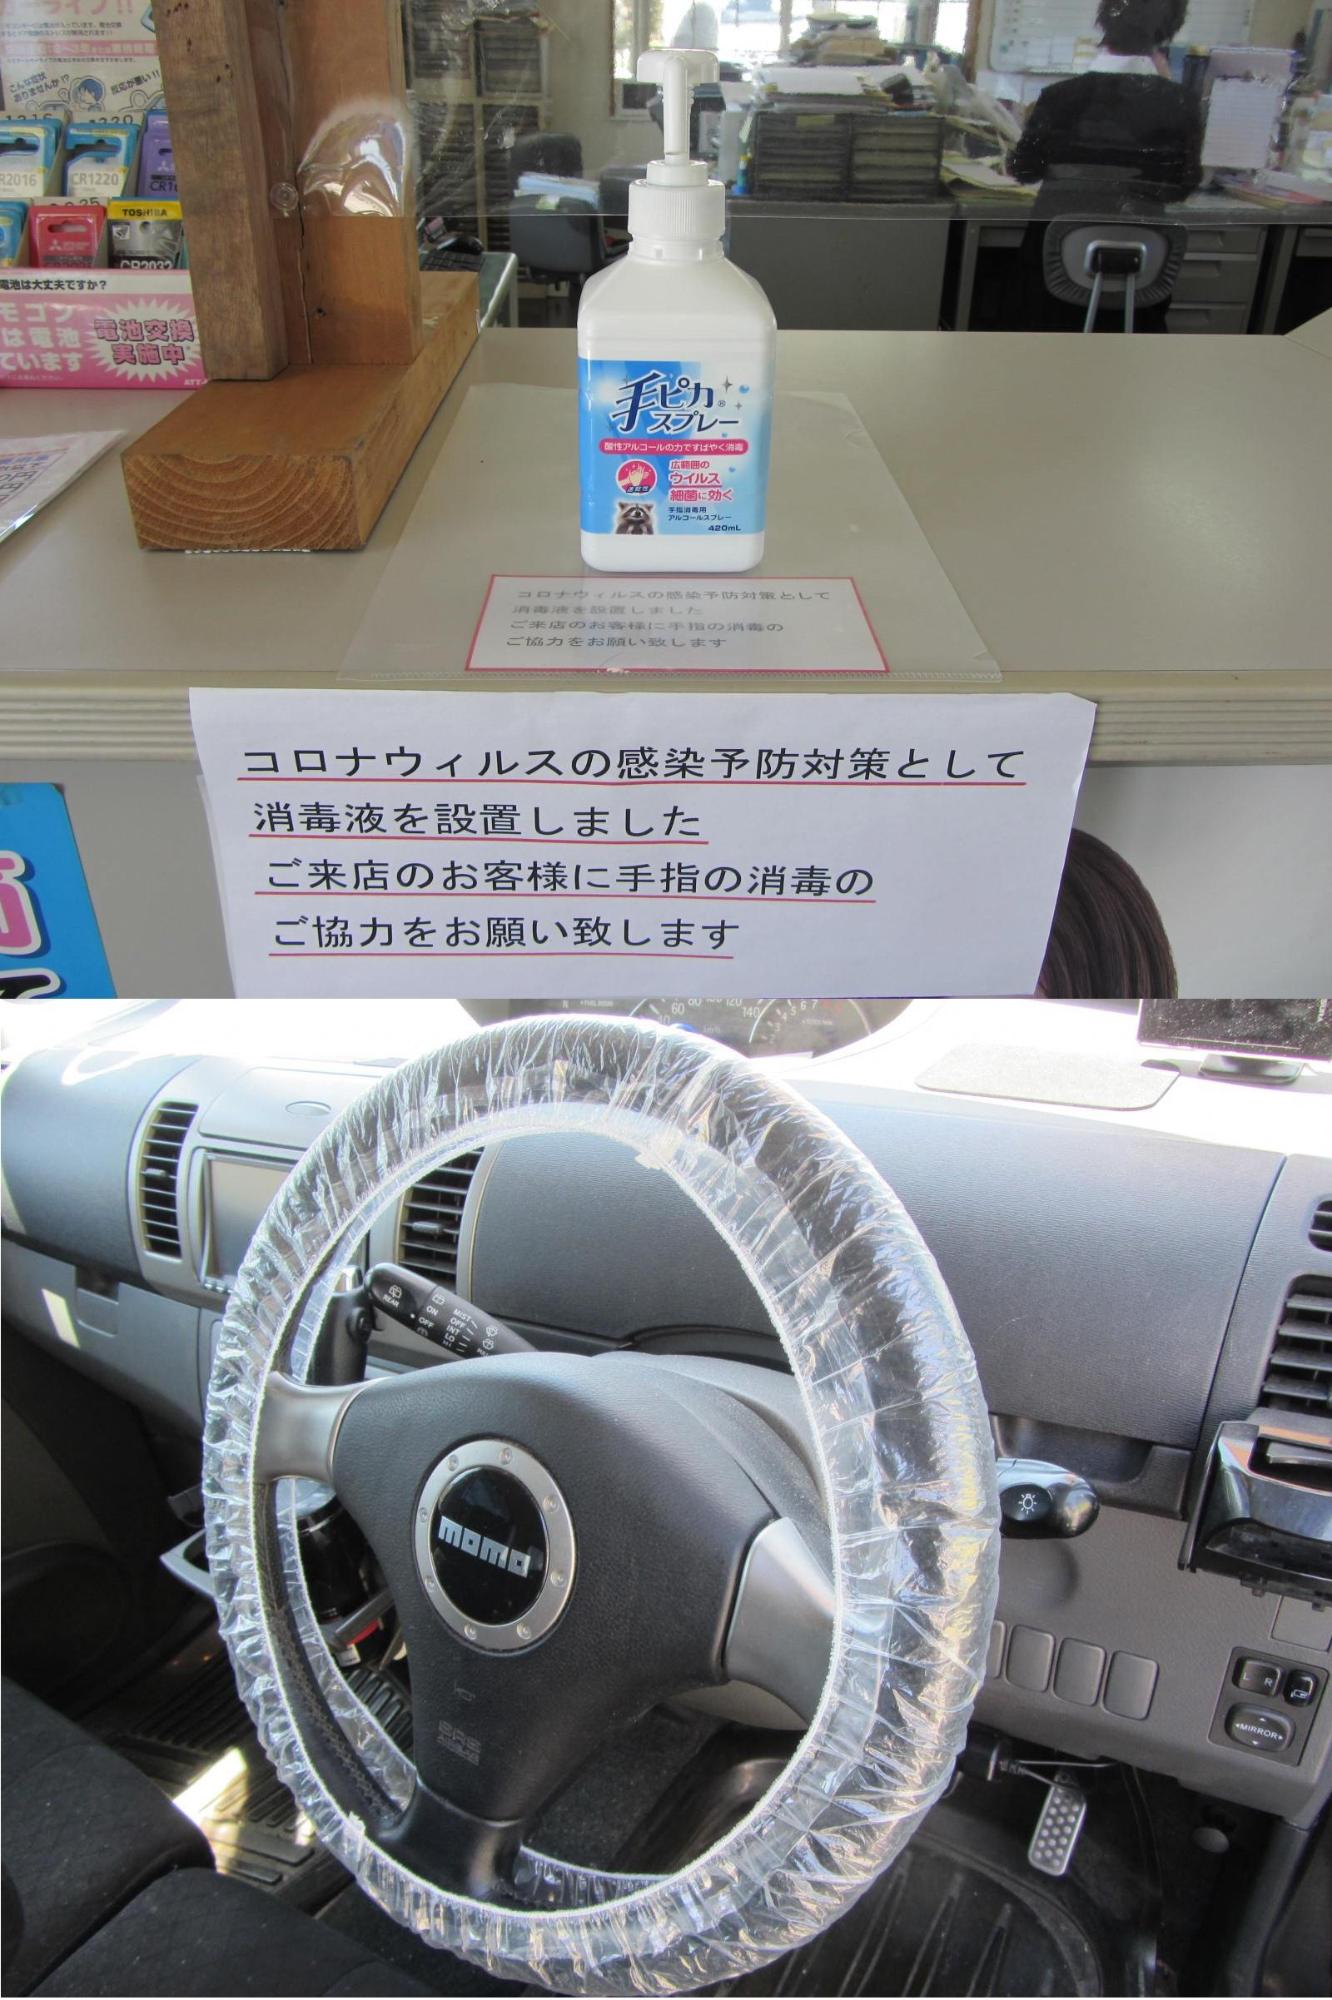 上：受付に消毒液が置いてある写真、下：自動車のハンドルにビニールのカバーがかけられている写真